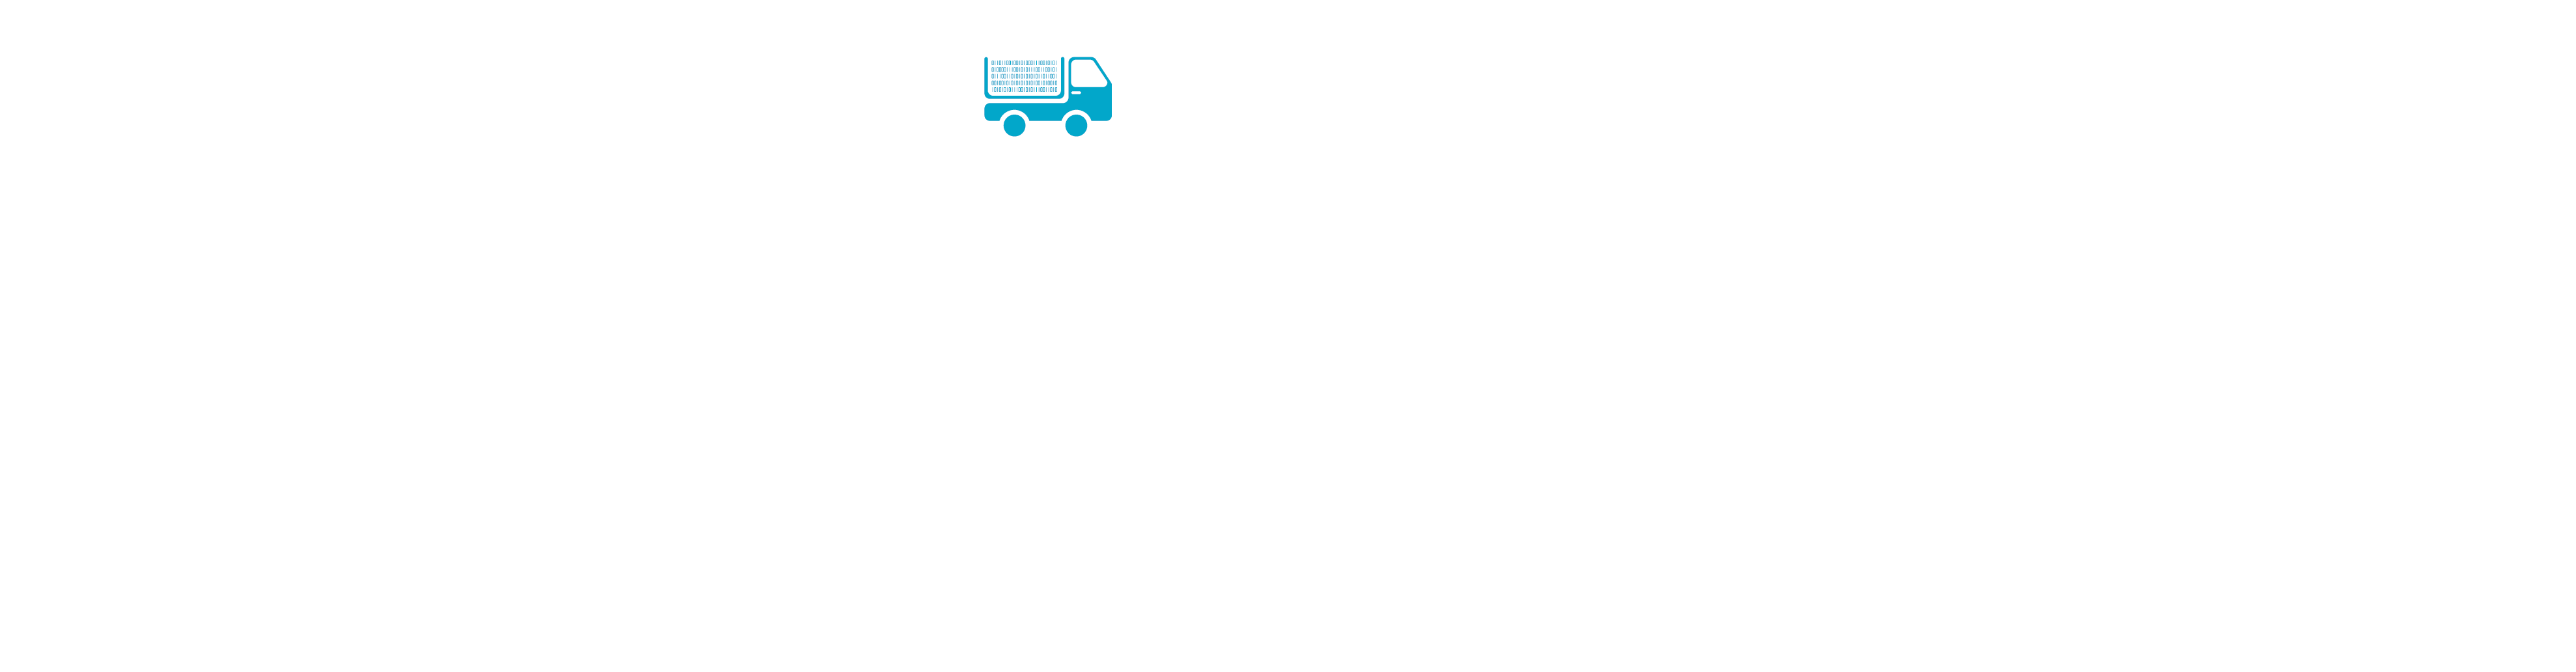 Image Dockflow Dashboard